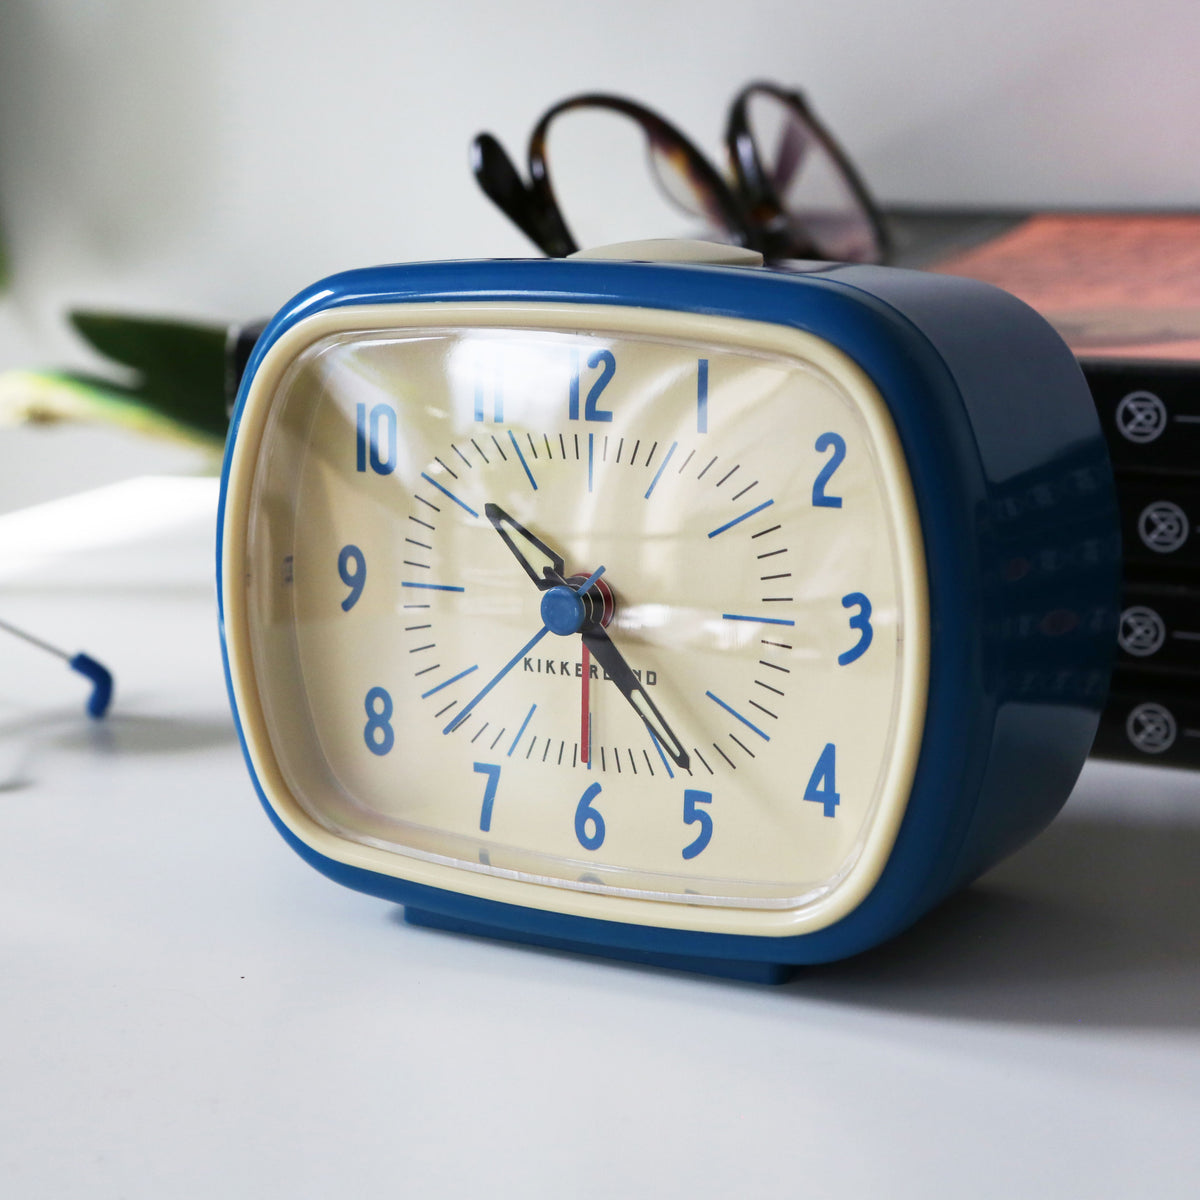 Geleerde slachtoffers Afdaling Retro Alarm Clock + Blue — Kikkerland B.V